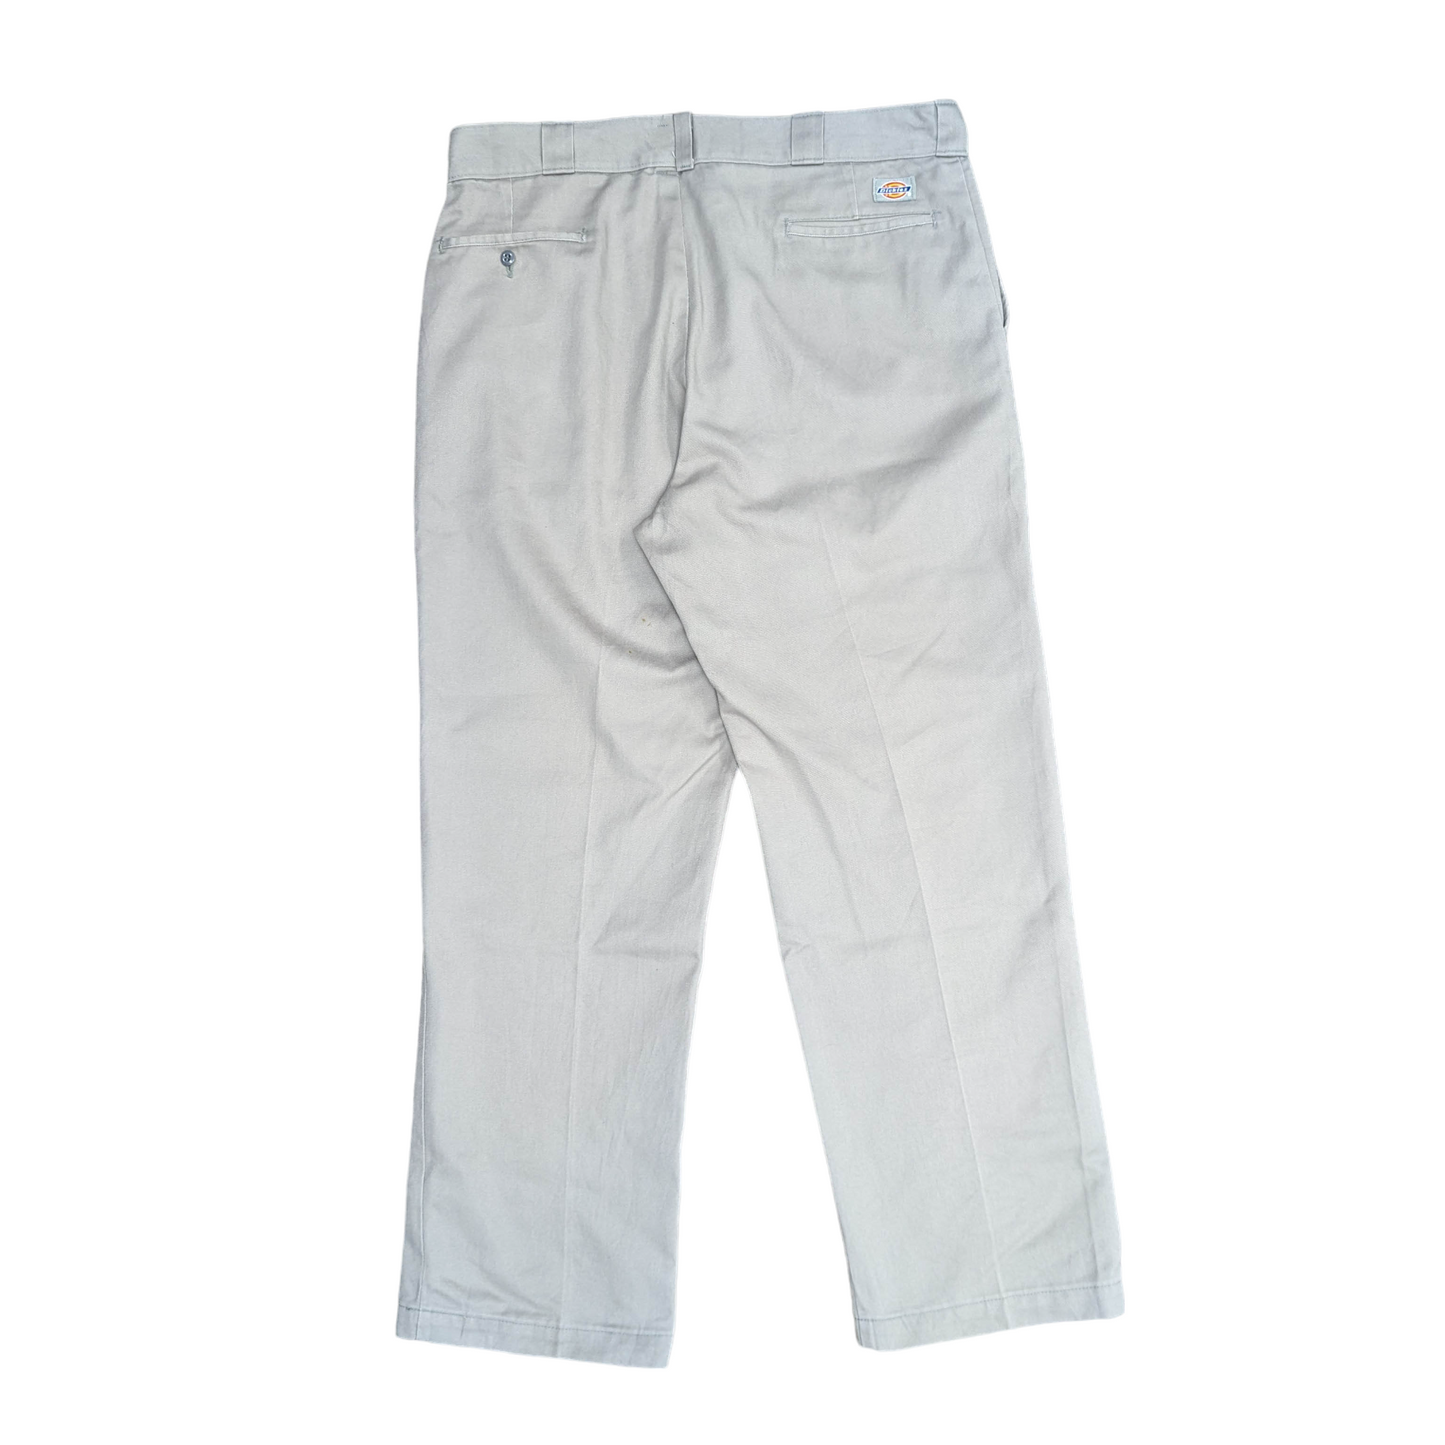 Dickies 874 Original Fit Trousers W37 L30